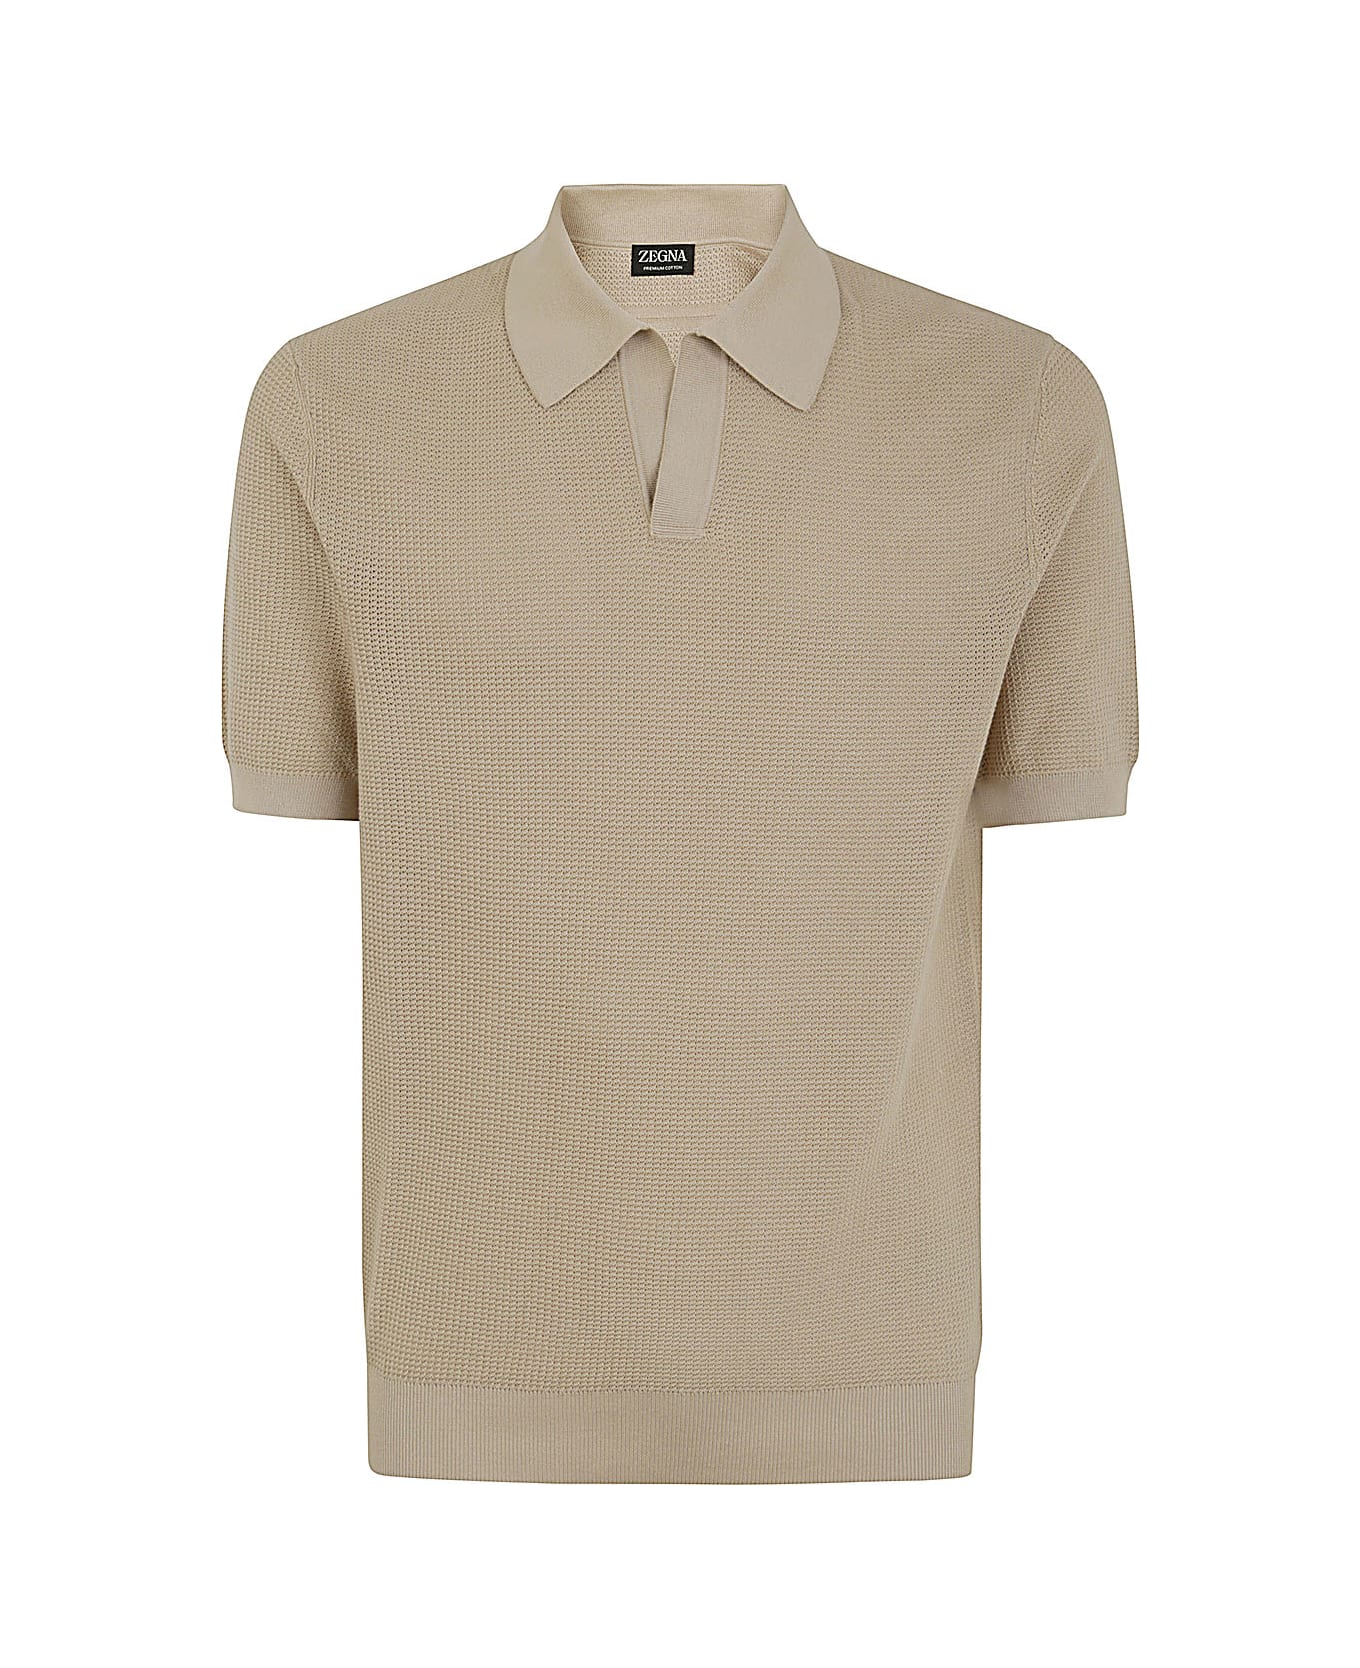 Zegna Premium Cotton Polo - Beige ポロシャツ